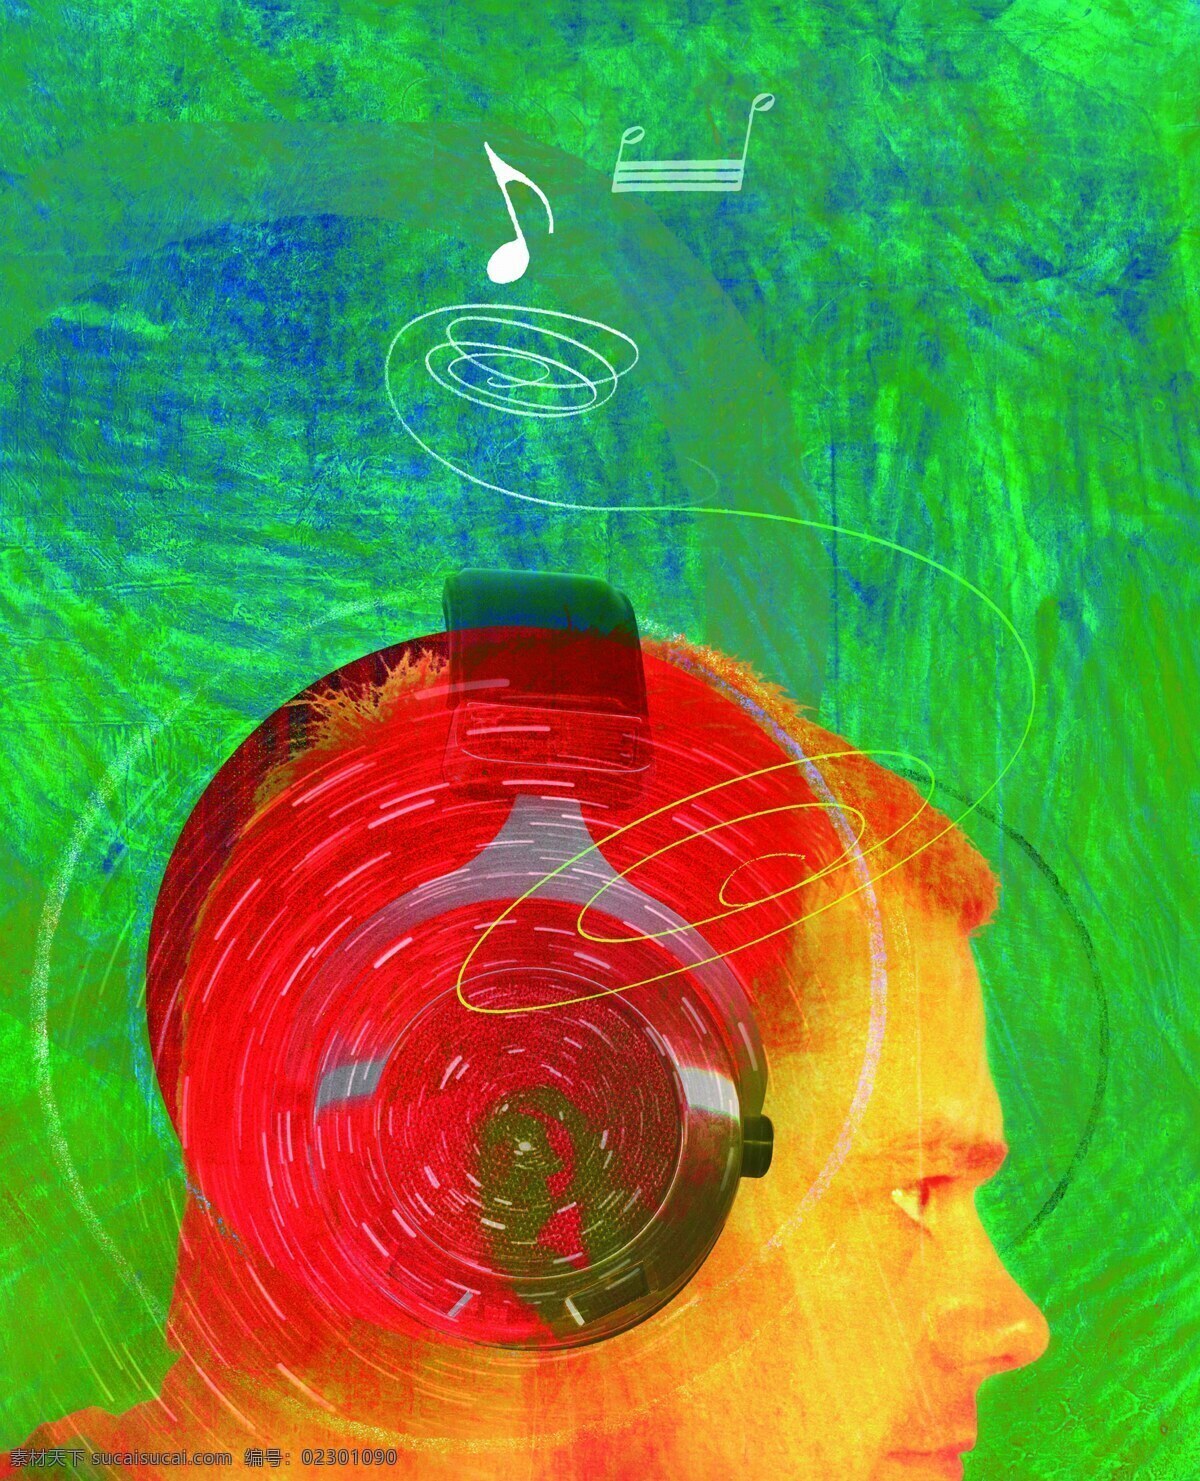 音乐 遐想 m023 艺术 文化 人文 色彩 听 耳朵 声音 乐器 音符 音乐遐想 绘画书法 文化艺术